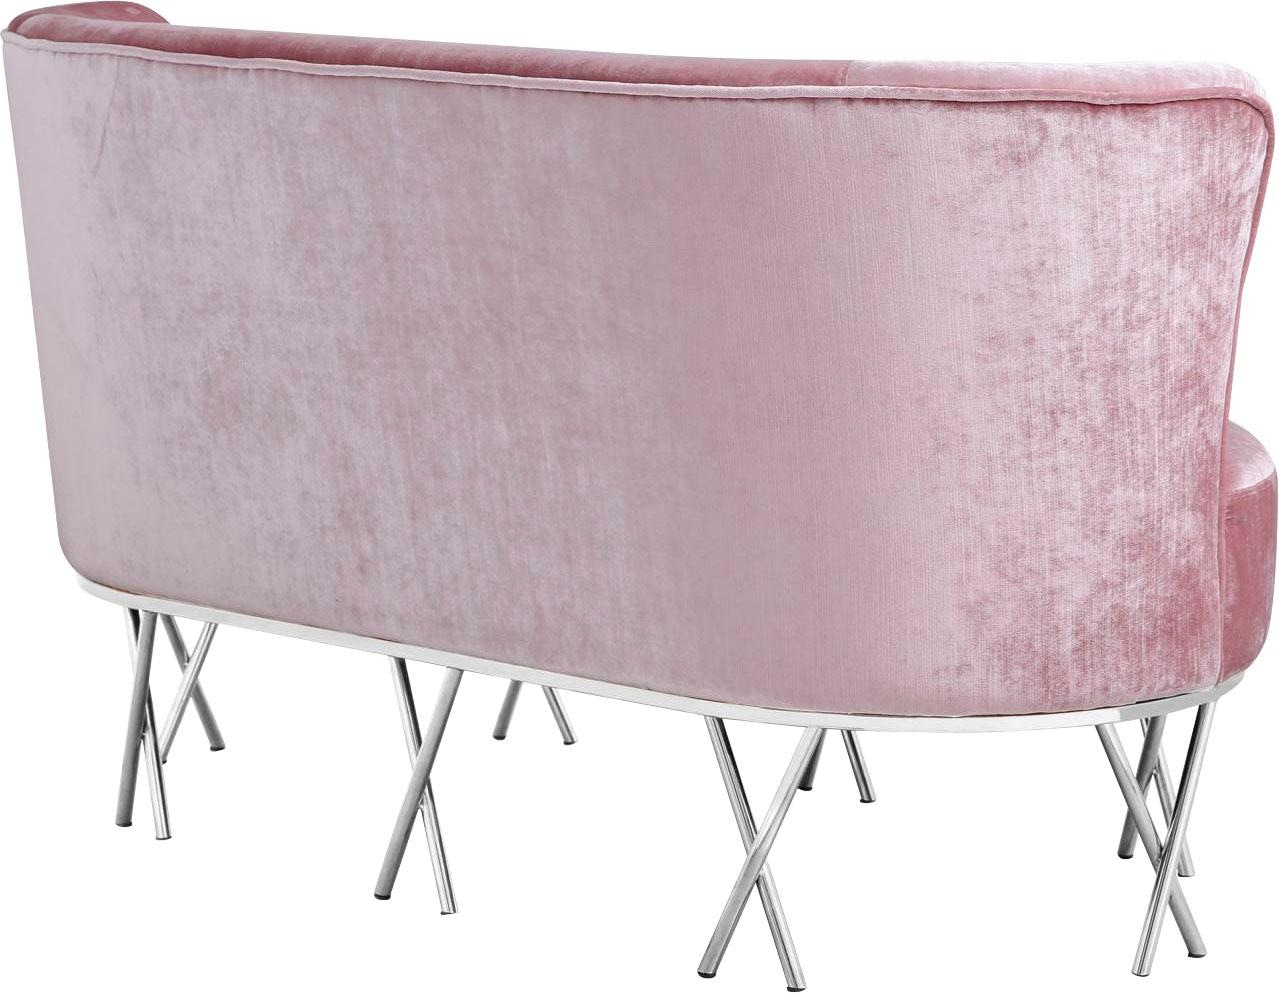 Leonique Sofa »Scarlett«, mit chromfarbenen Metallfüßen, extravagantes Design